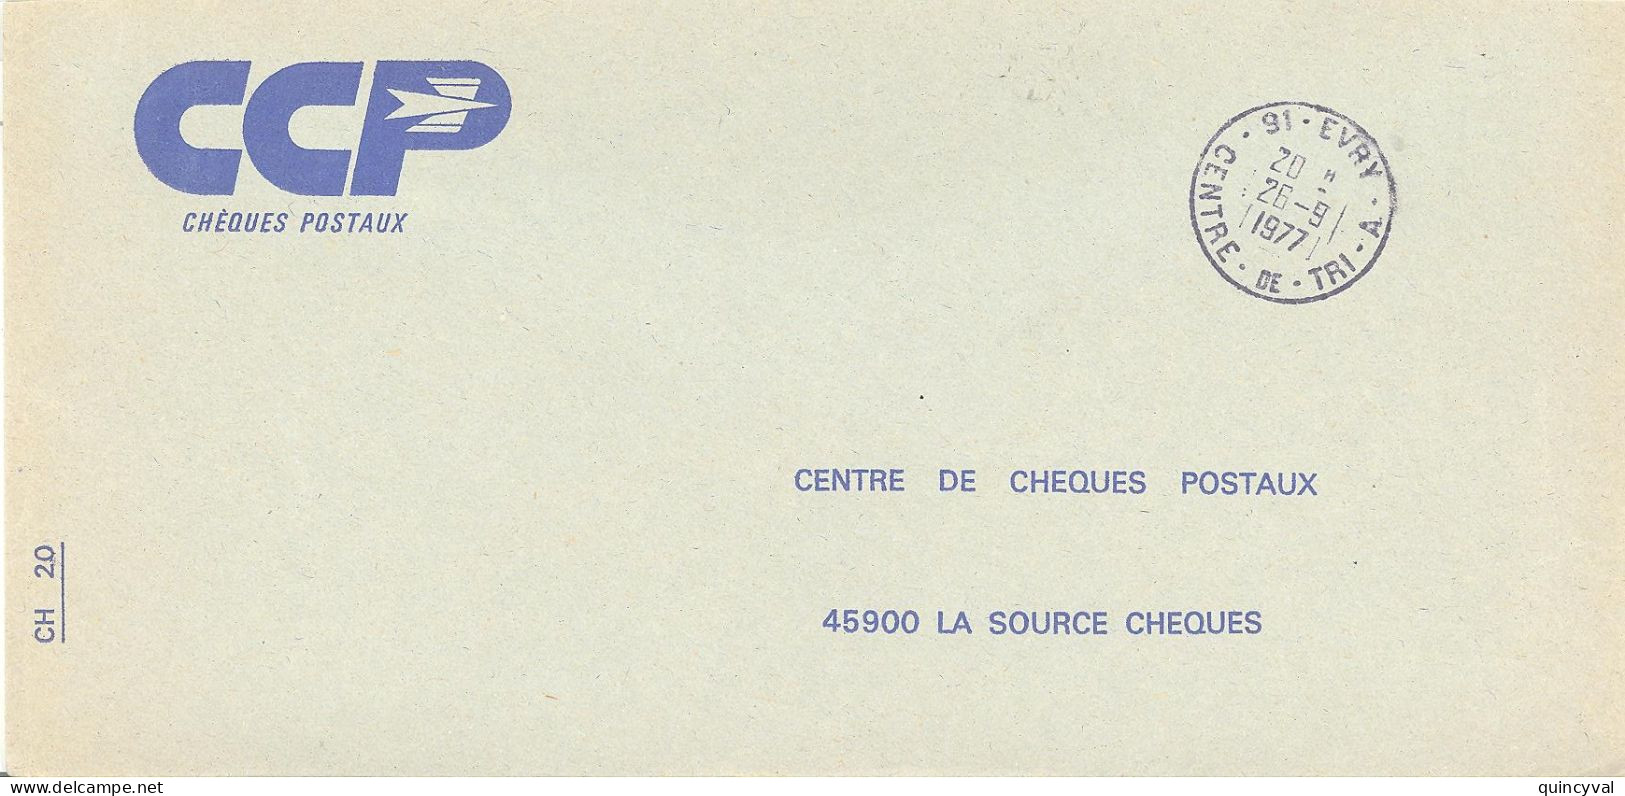 91 EVRY  CENTRE DE TRI  A   Lettre Enveloppe Des CCP Ob26 9 1977 - Manual Postmarks